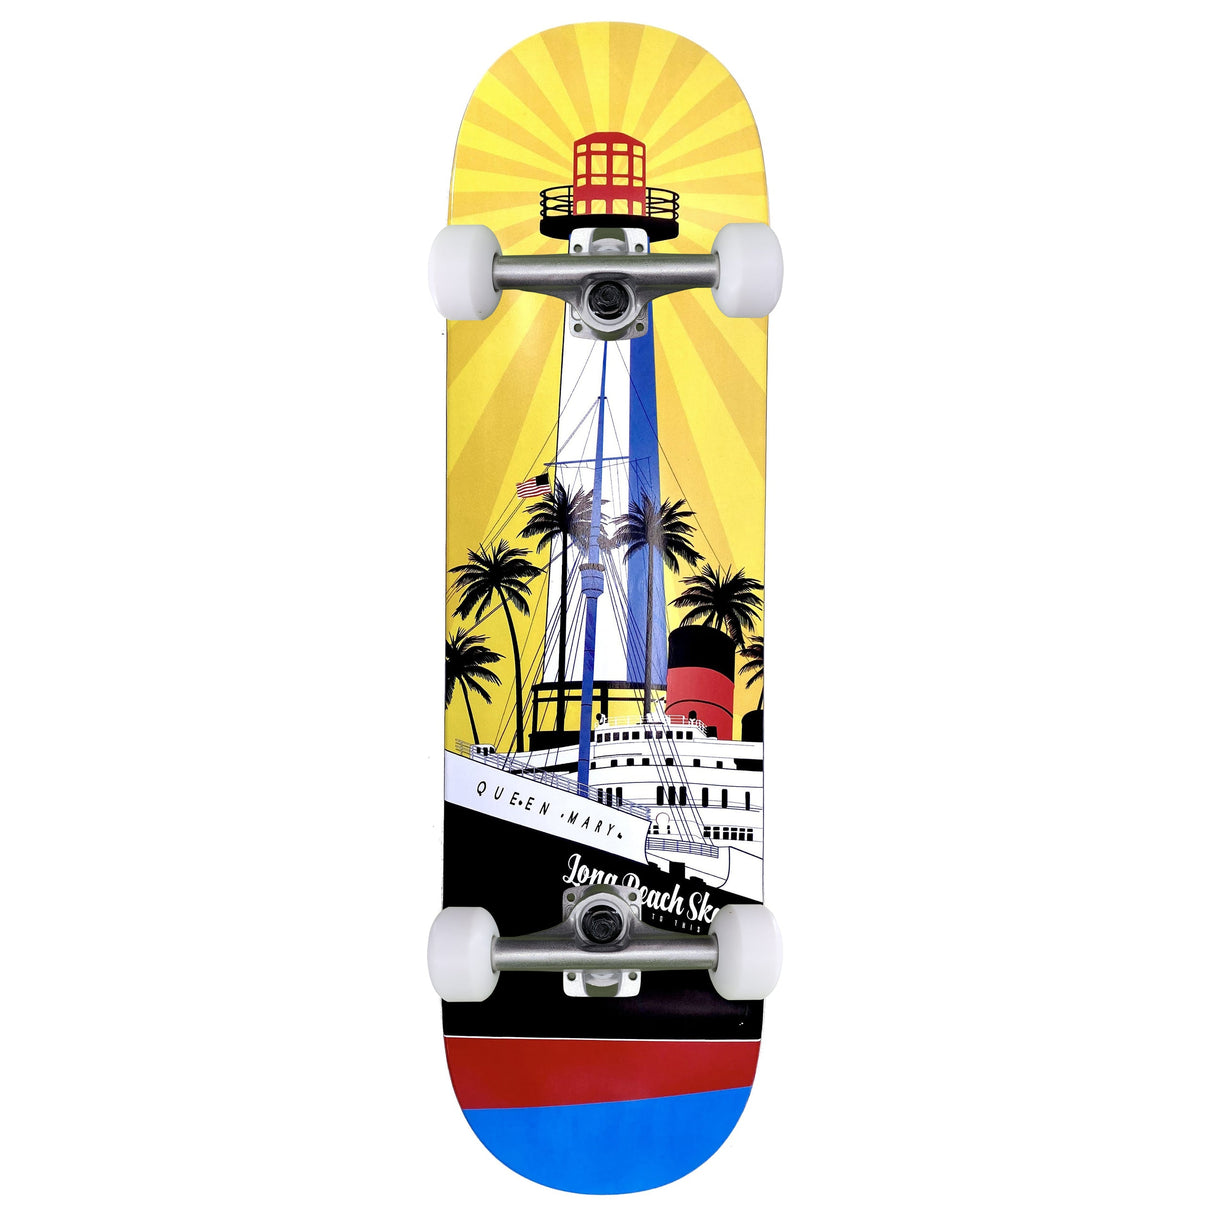 Long Beach Skate Co. "Rising Sun on Light Mary" 7.5" Complete Skateboard